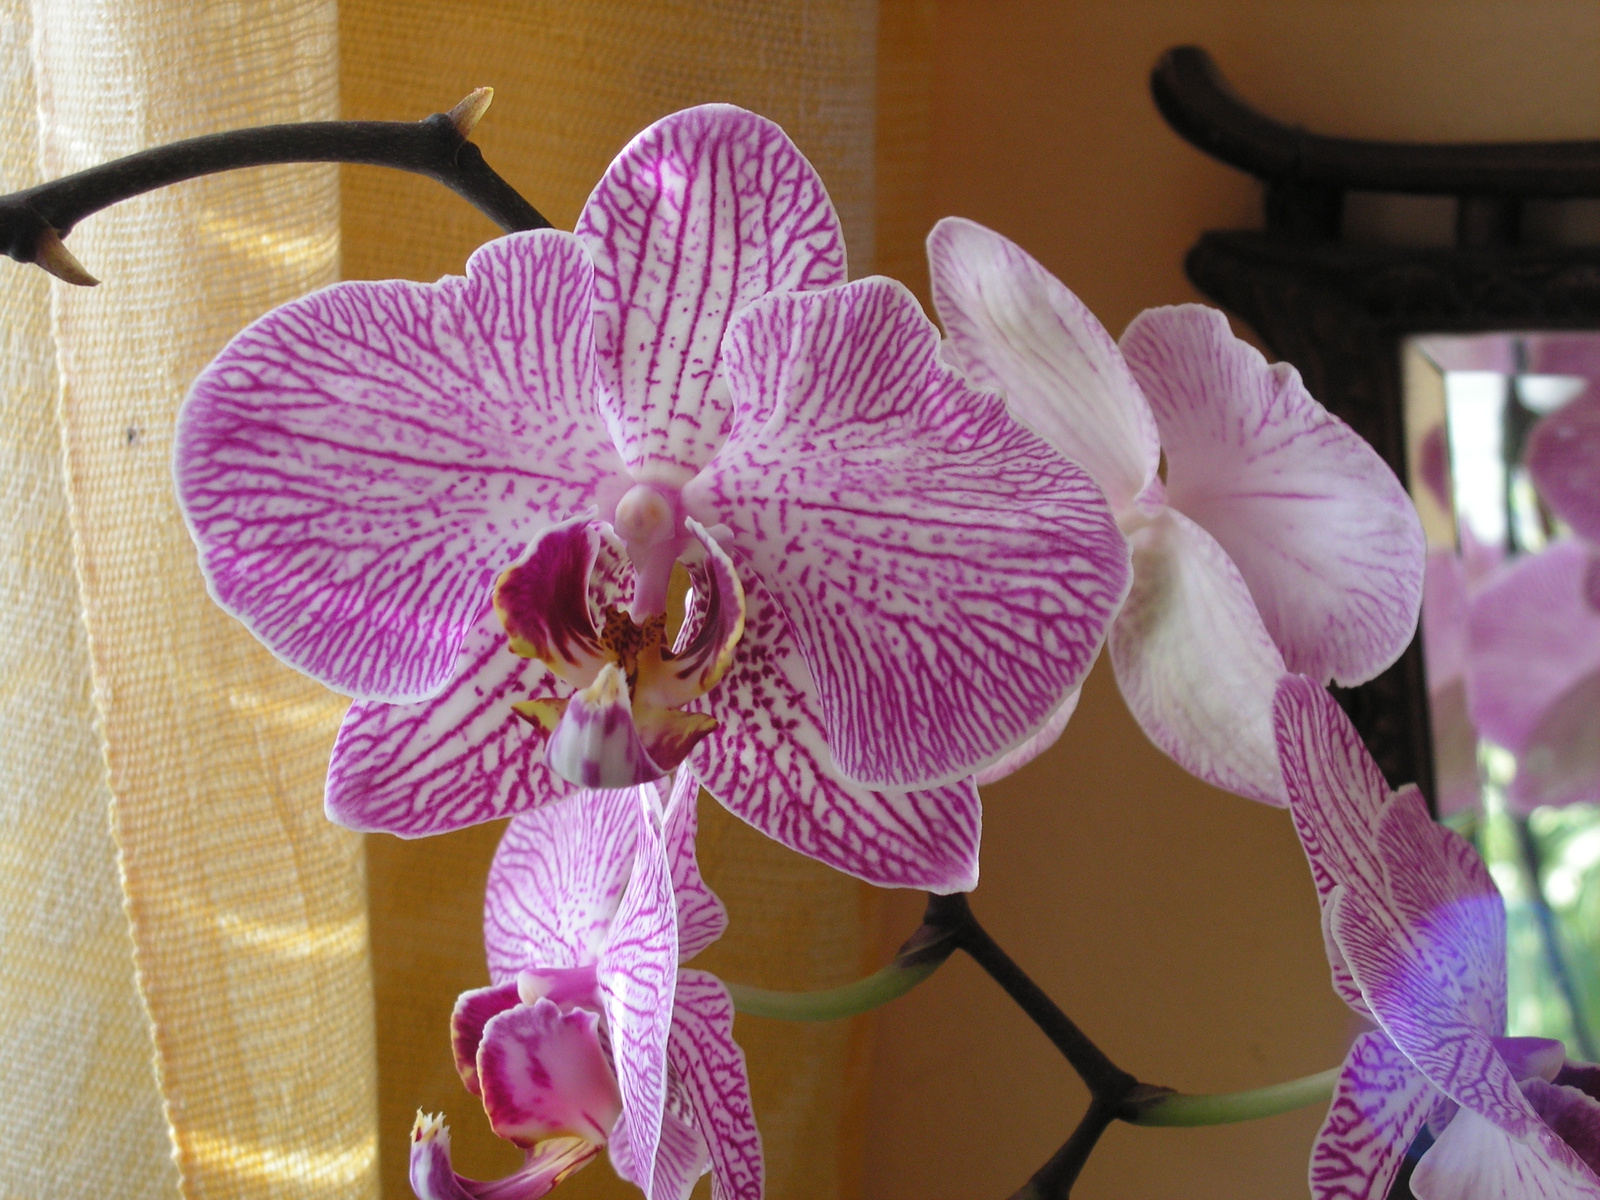 Orchideák otthon, SzG3